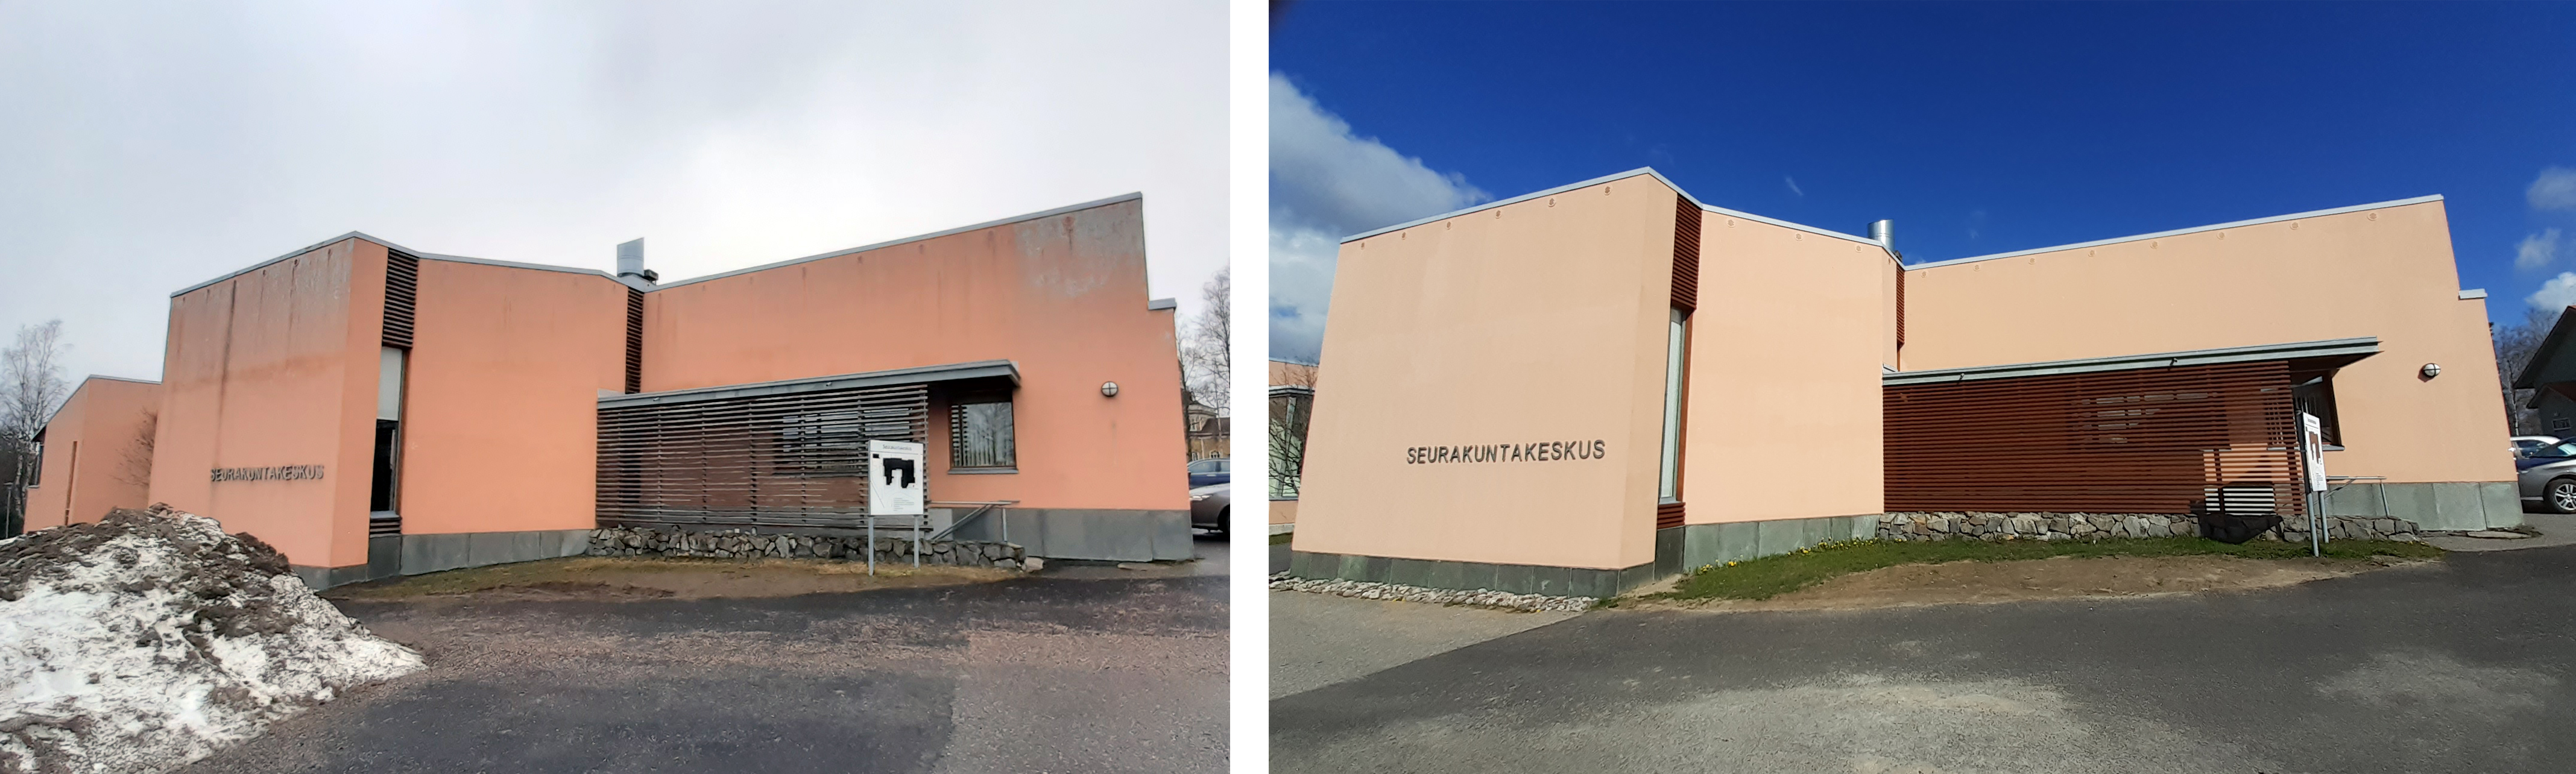 Kaustisen seurakuntakeskus ennen ja jälkeen kunnostuksen.